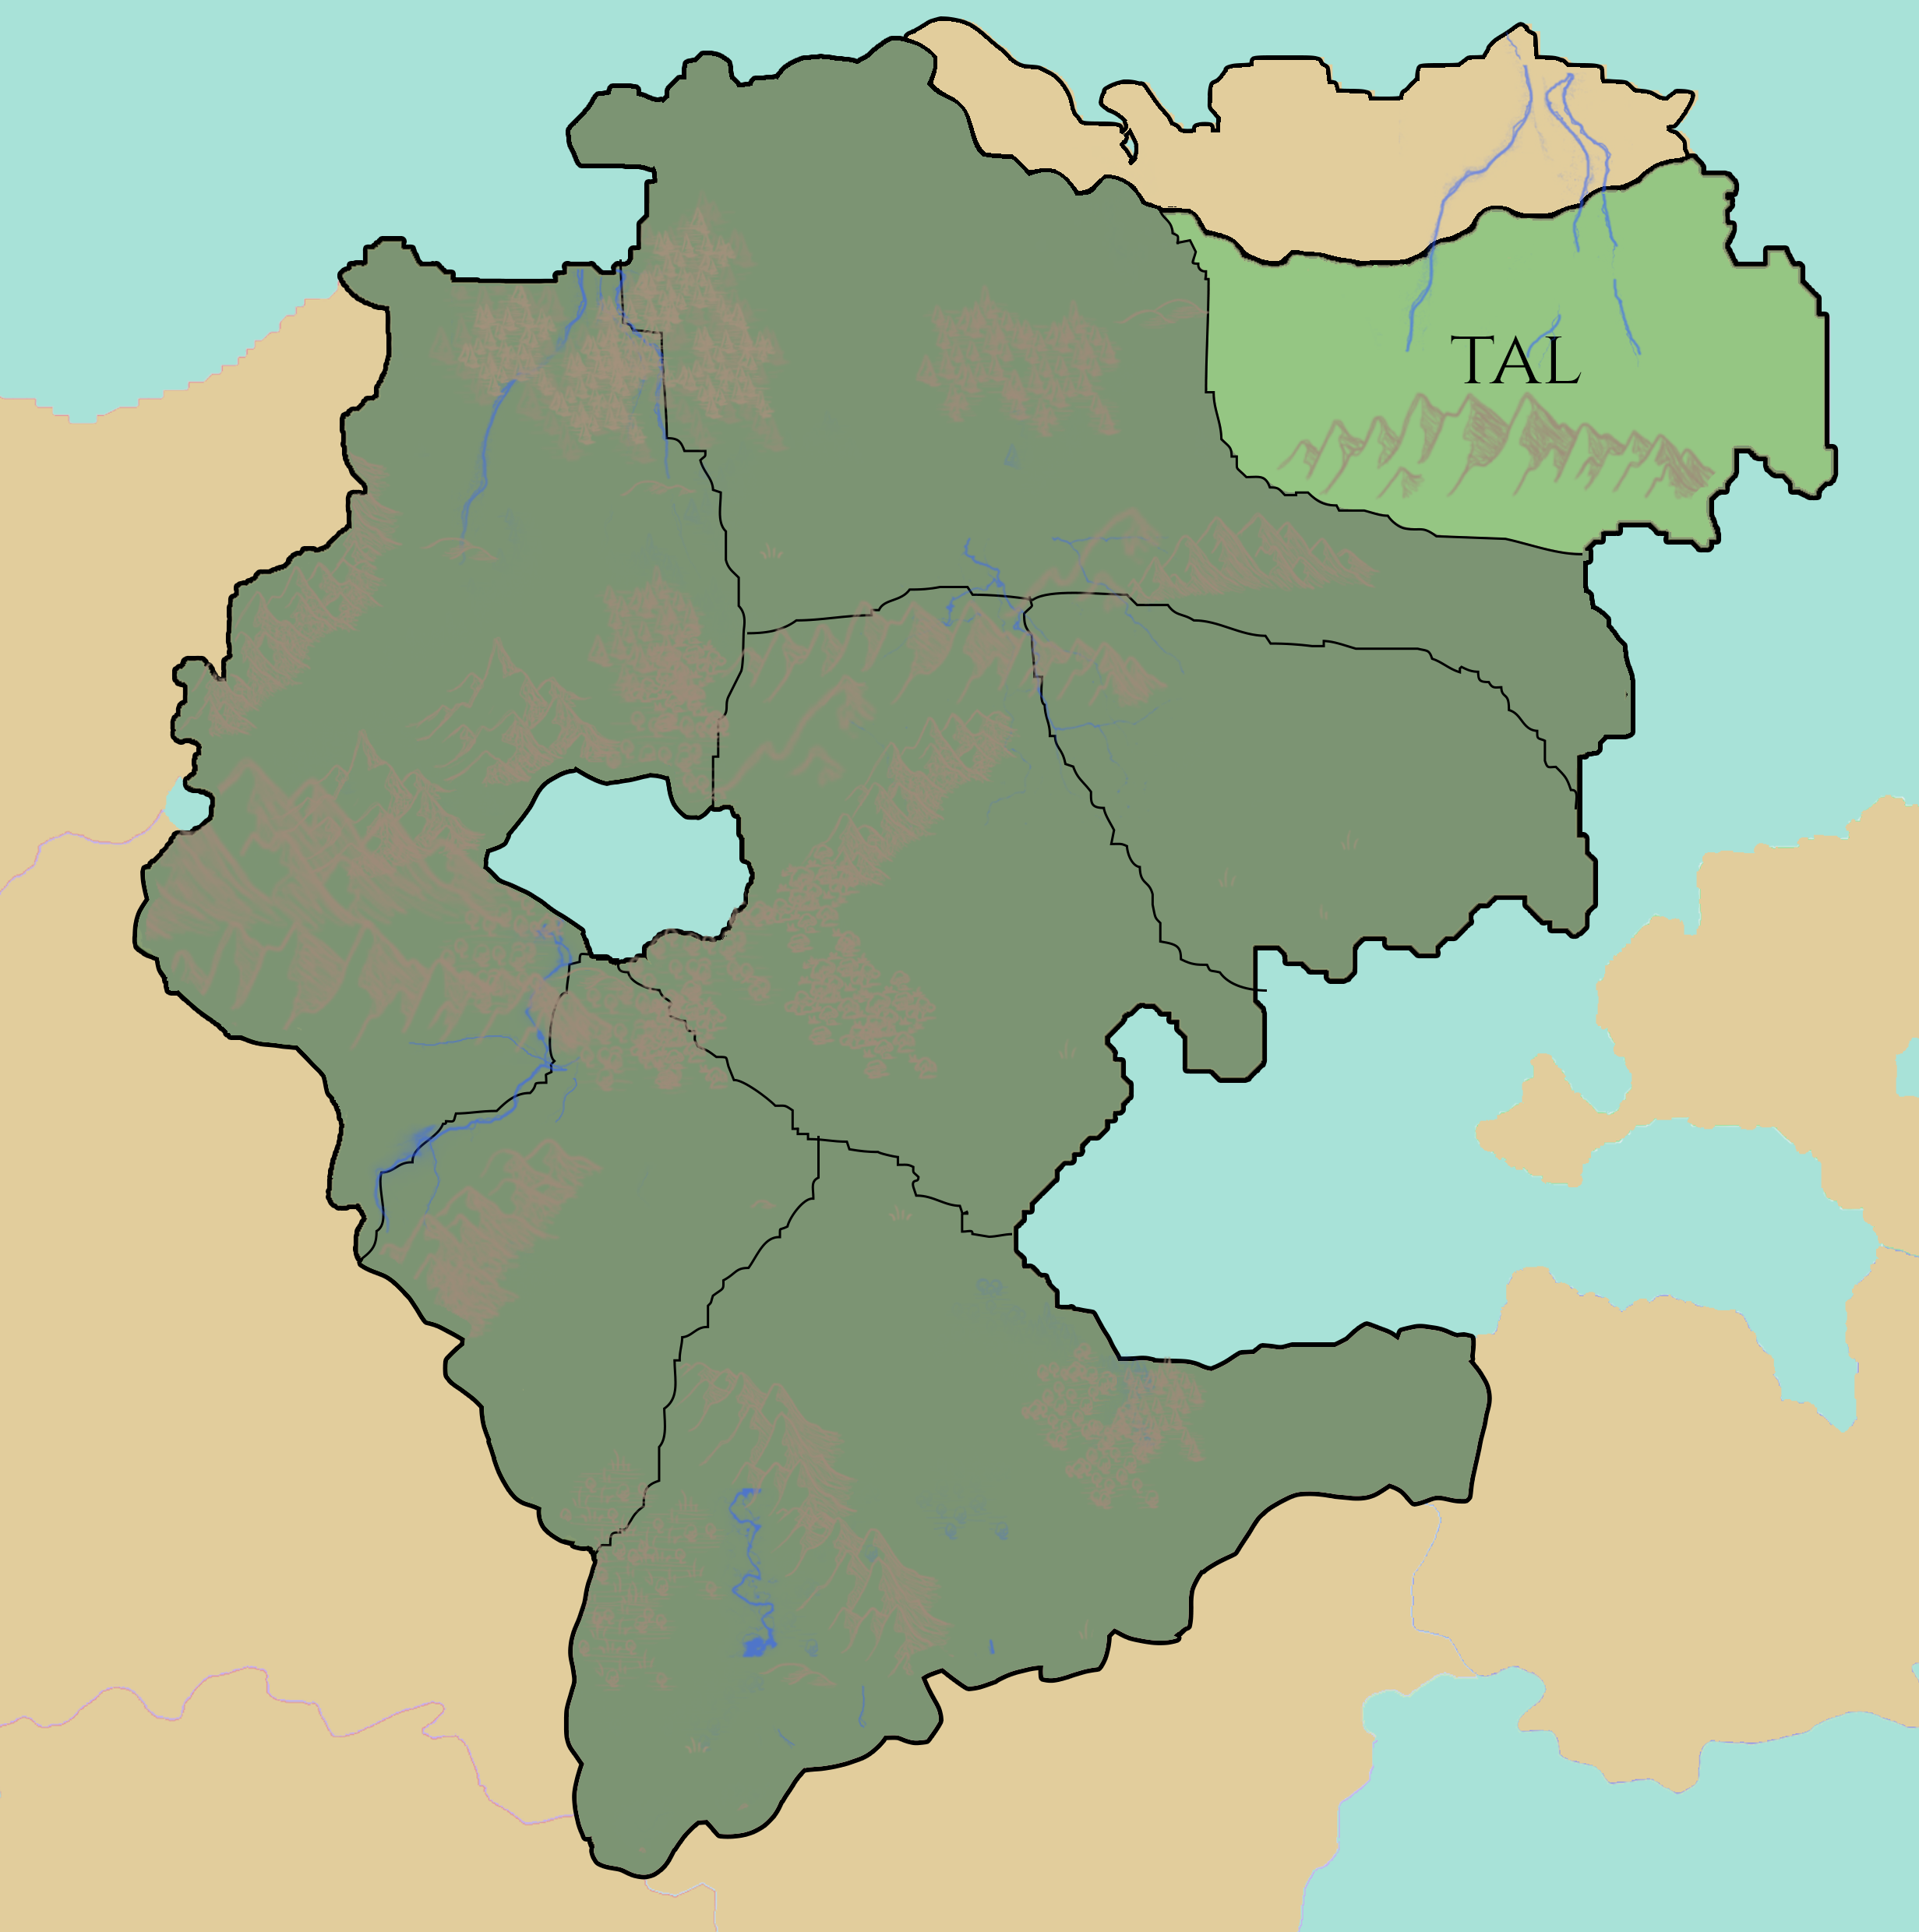 Location of Tal (light green)